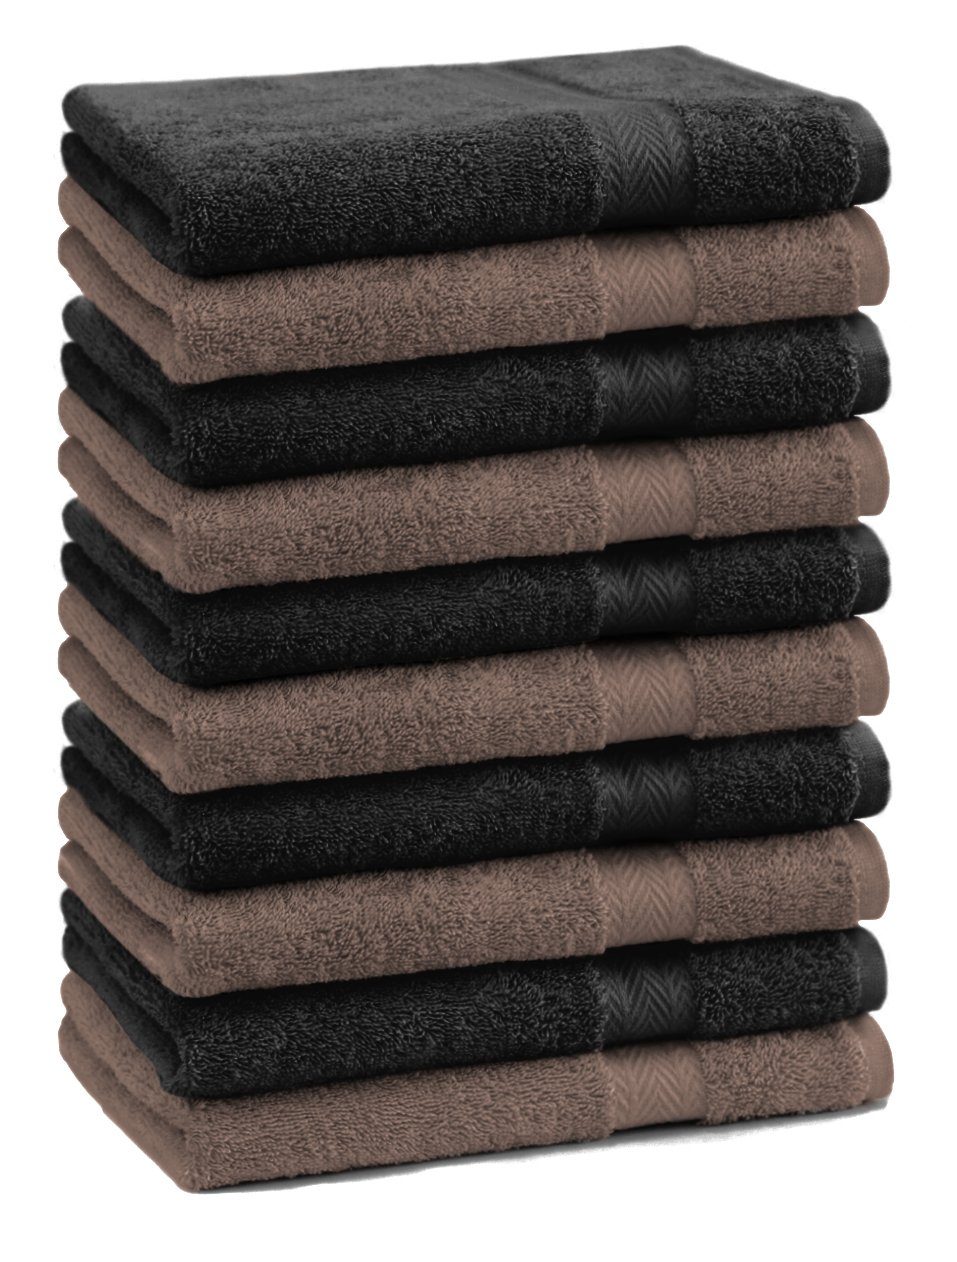 Betz Gästehandtücher 10 Stück Gästehandtücher Premium 100% Baumwolle Gästetuch-Set 30x50 cm Farbe nussbraun und schwarz, 100% baumwolle